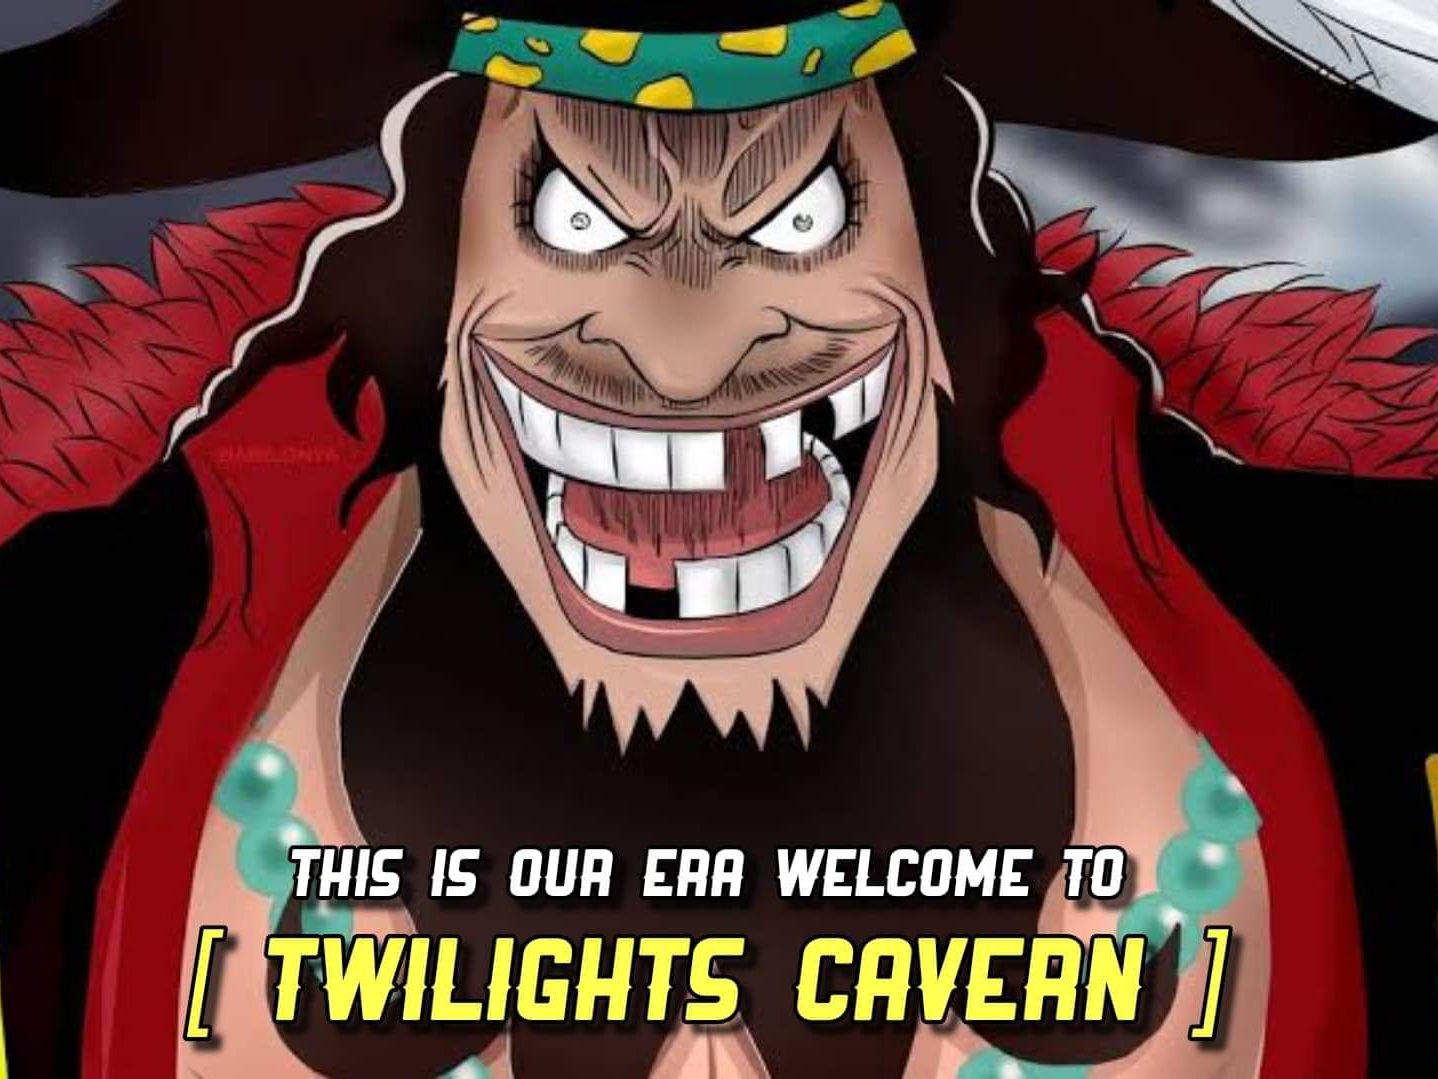 Twilights Cavern